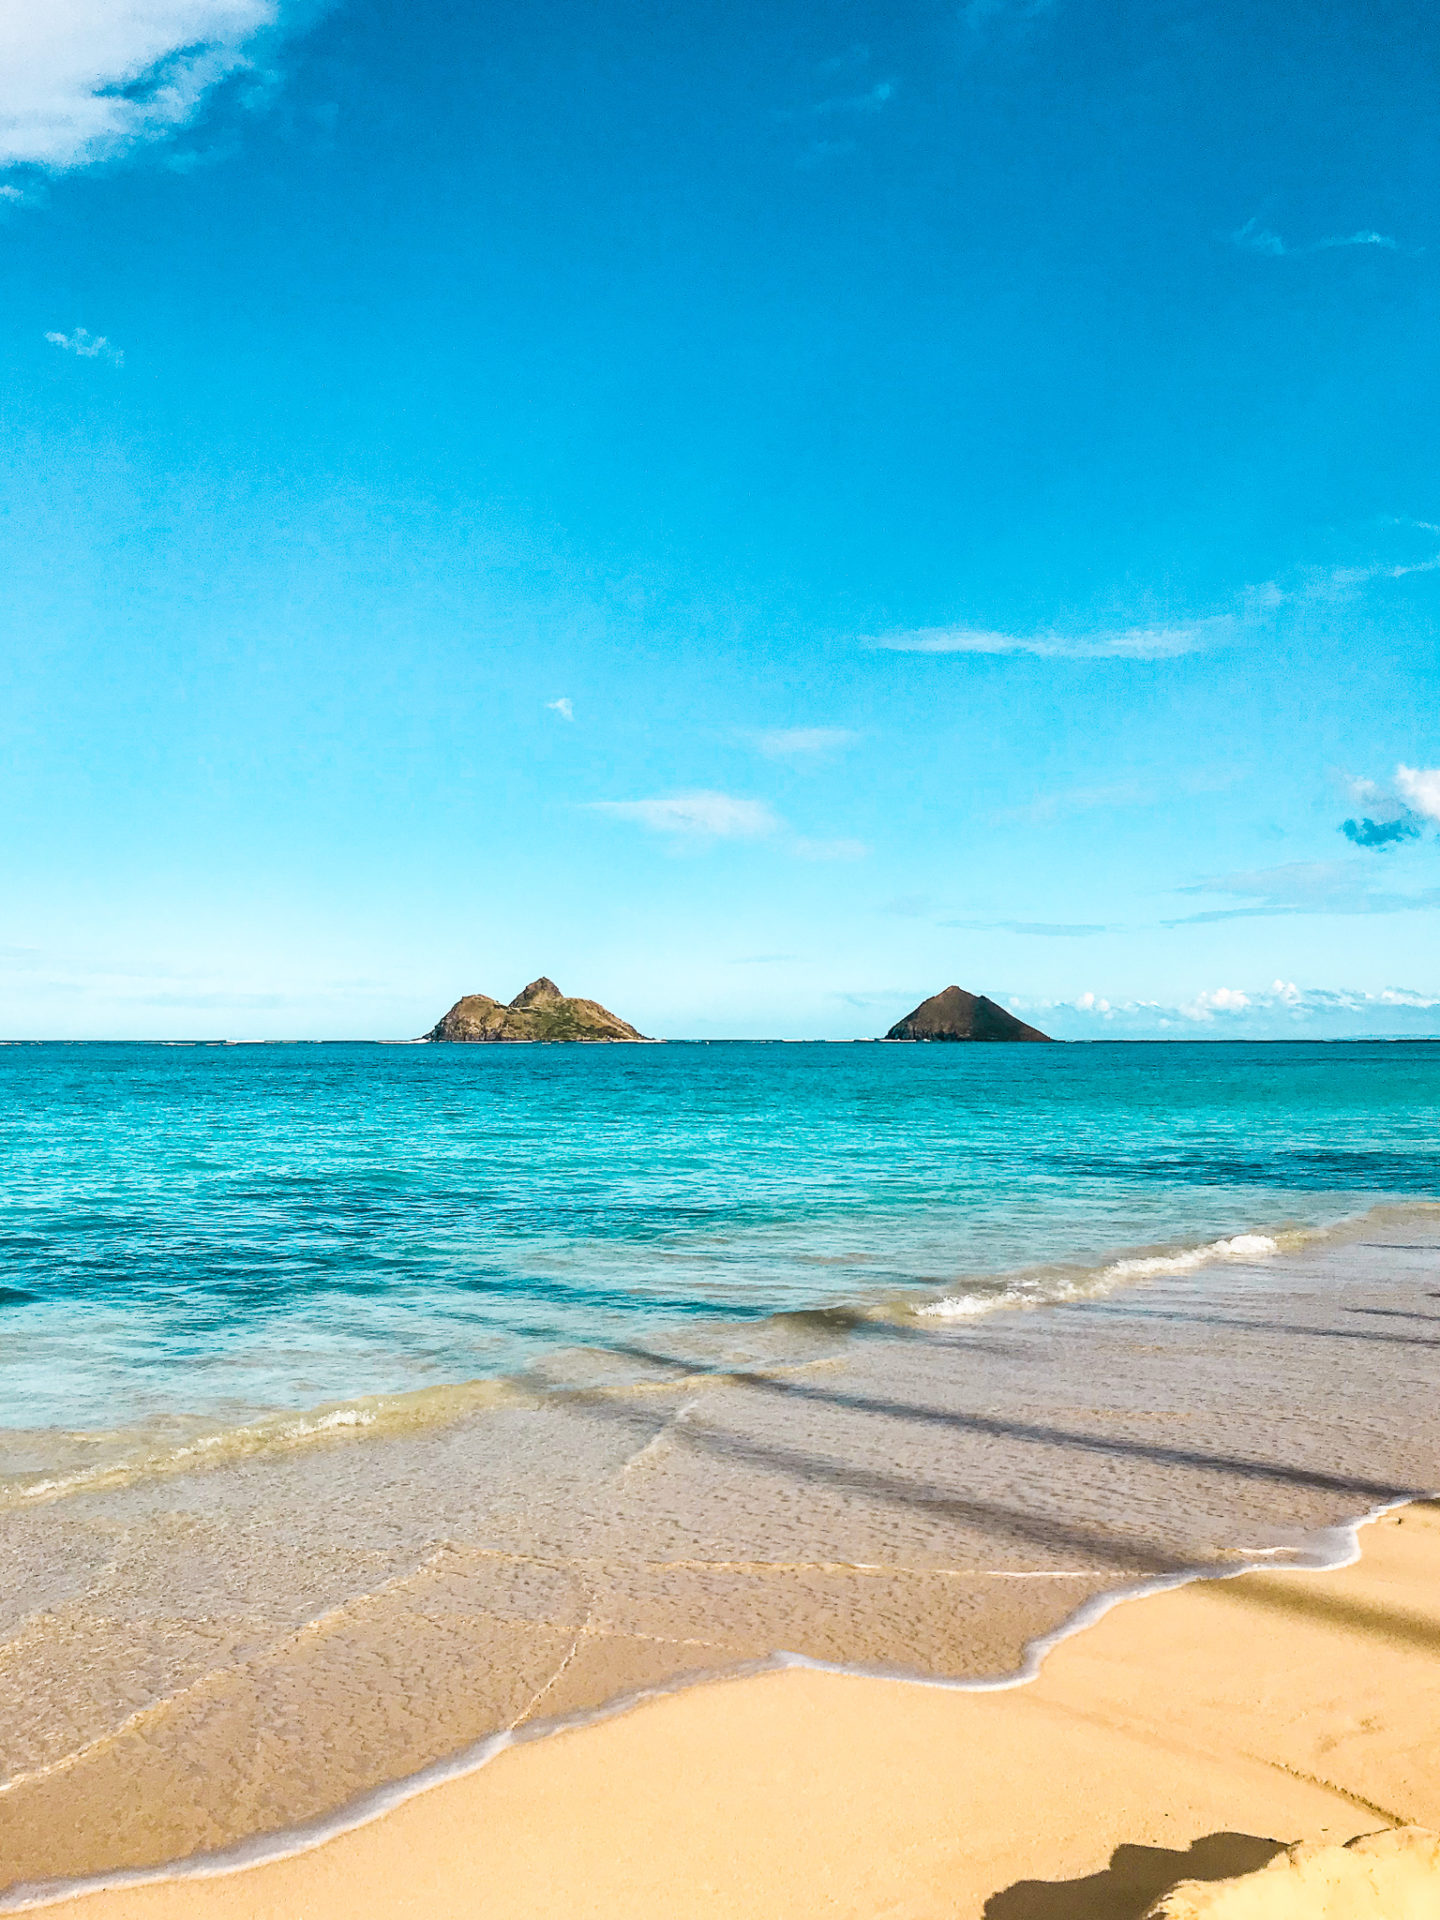 The Most Iconic Kailua Brand – Seas Aloha